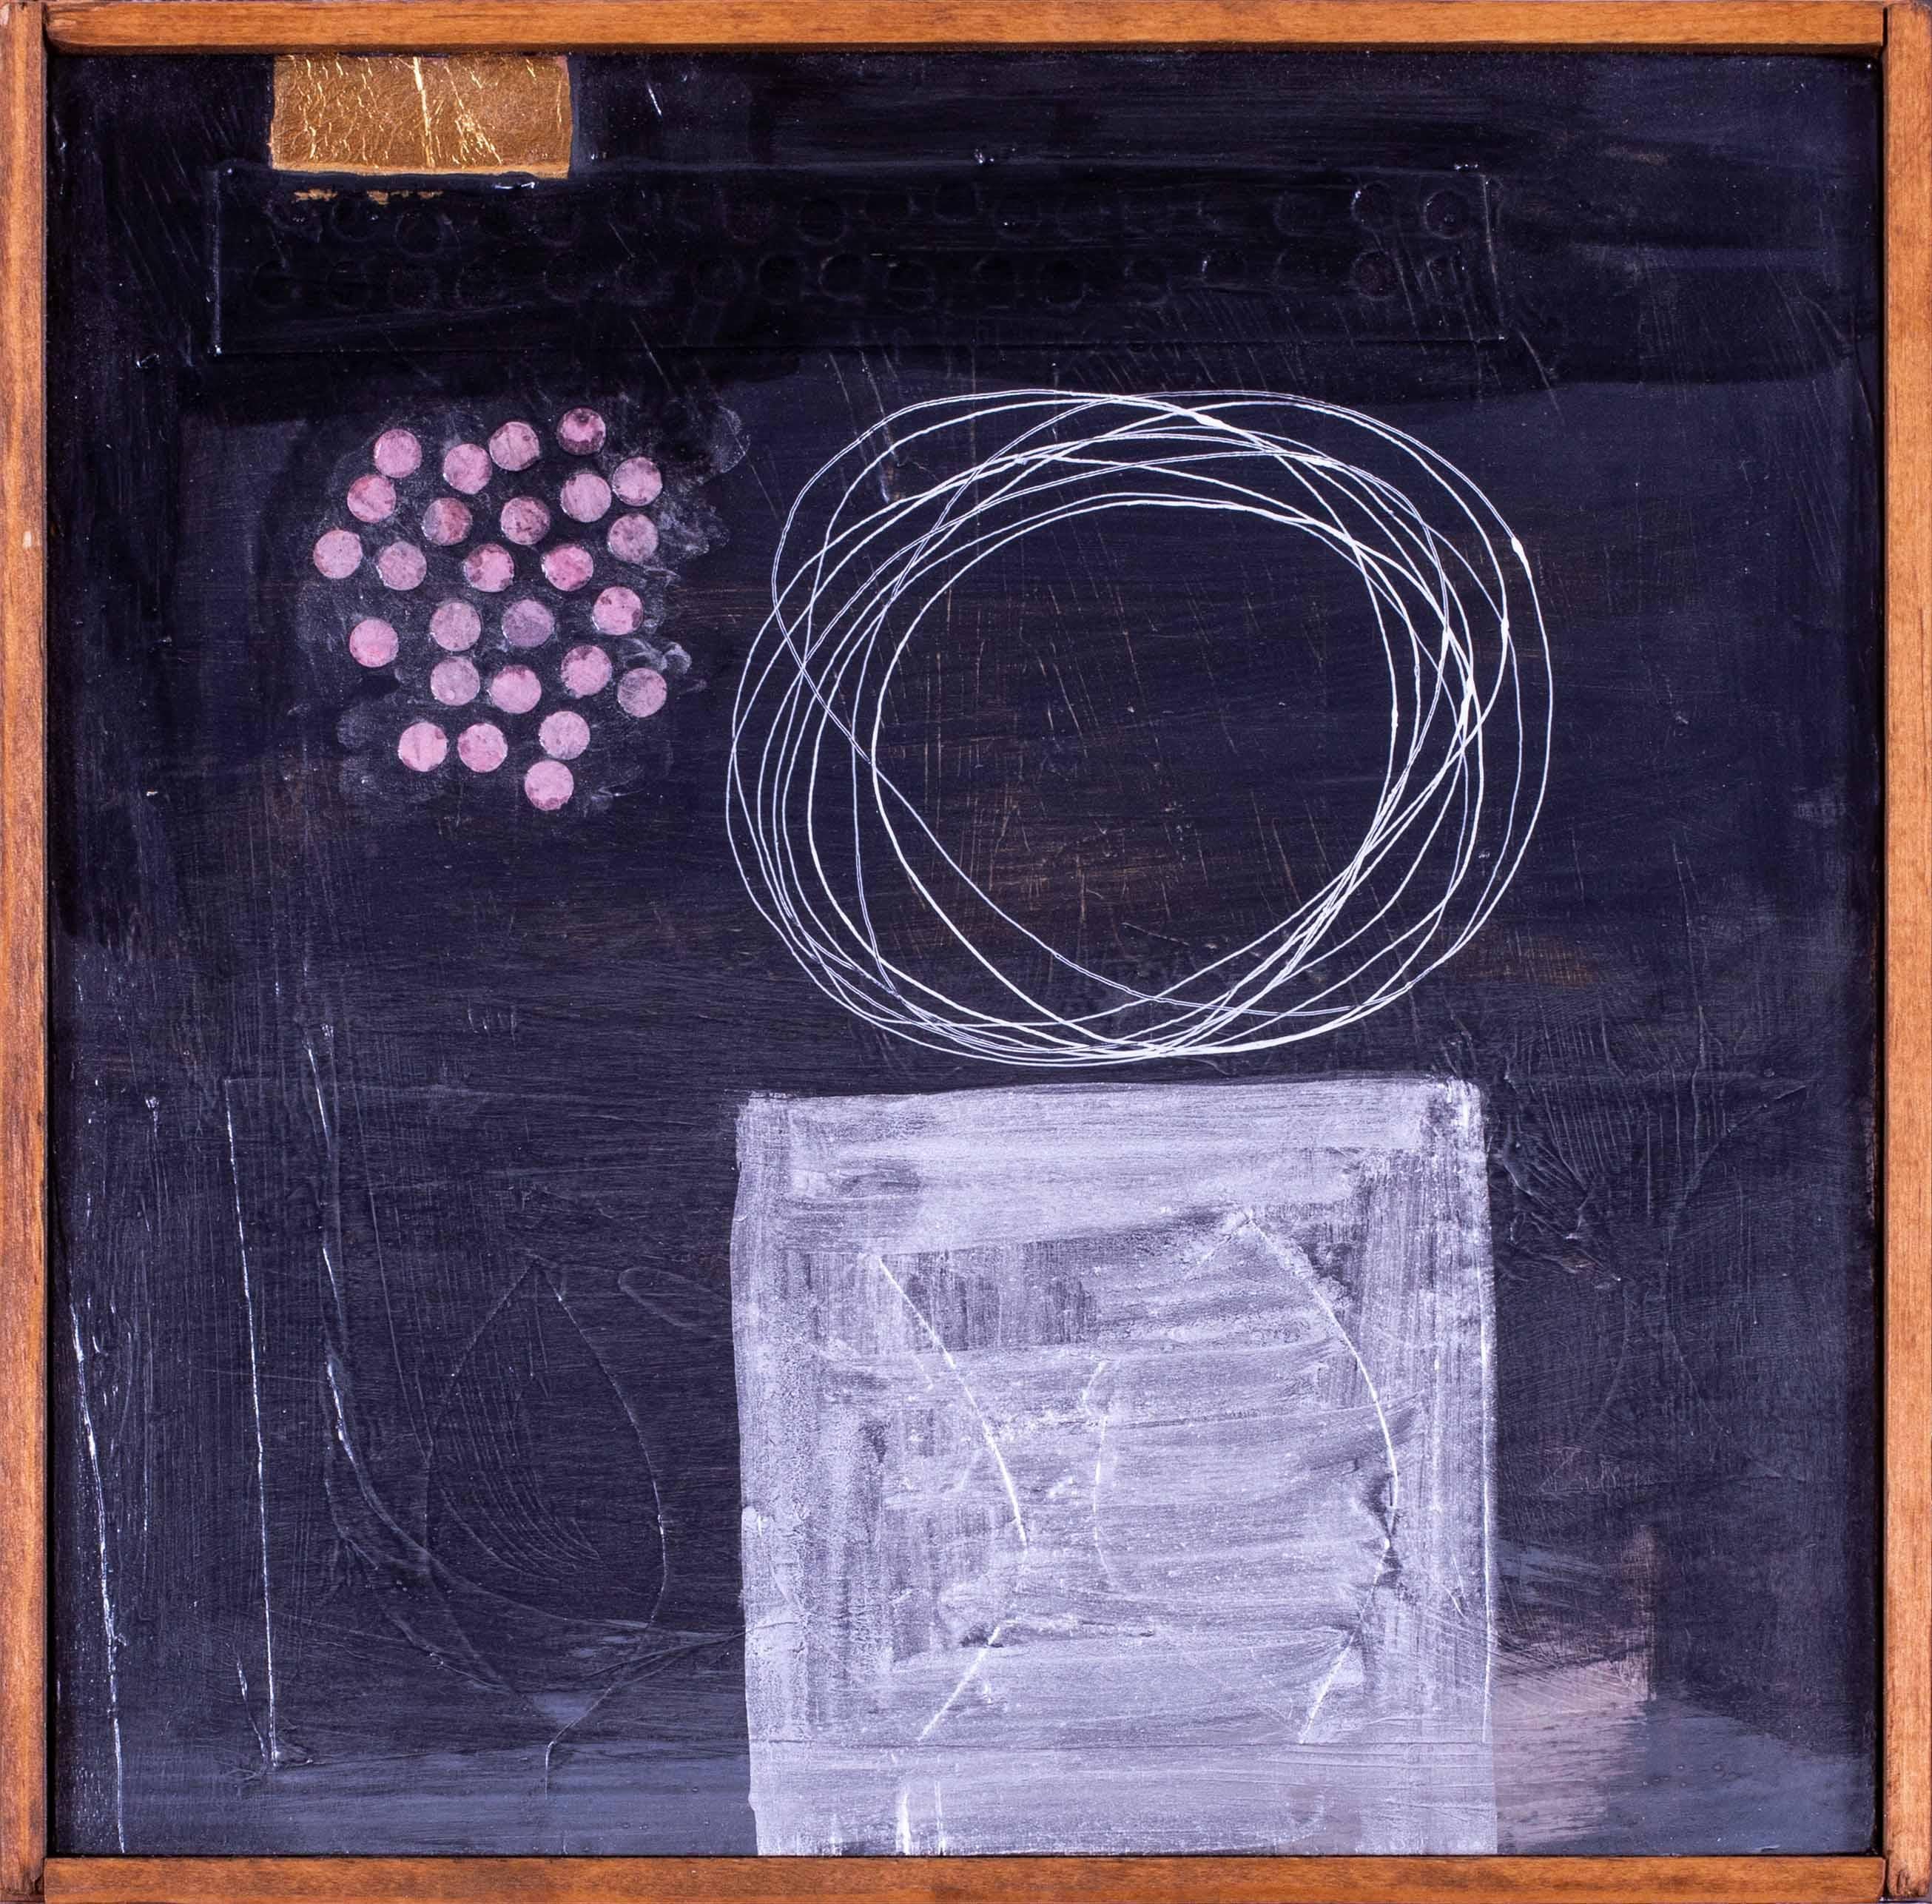 Amerikanische abstrakte Künstlerin Giorgia Siriaco, zeitgenössisches quadratisches Werk in Mischtechnik – Mixed Media Art von Georgia Siriaco